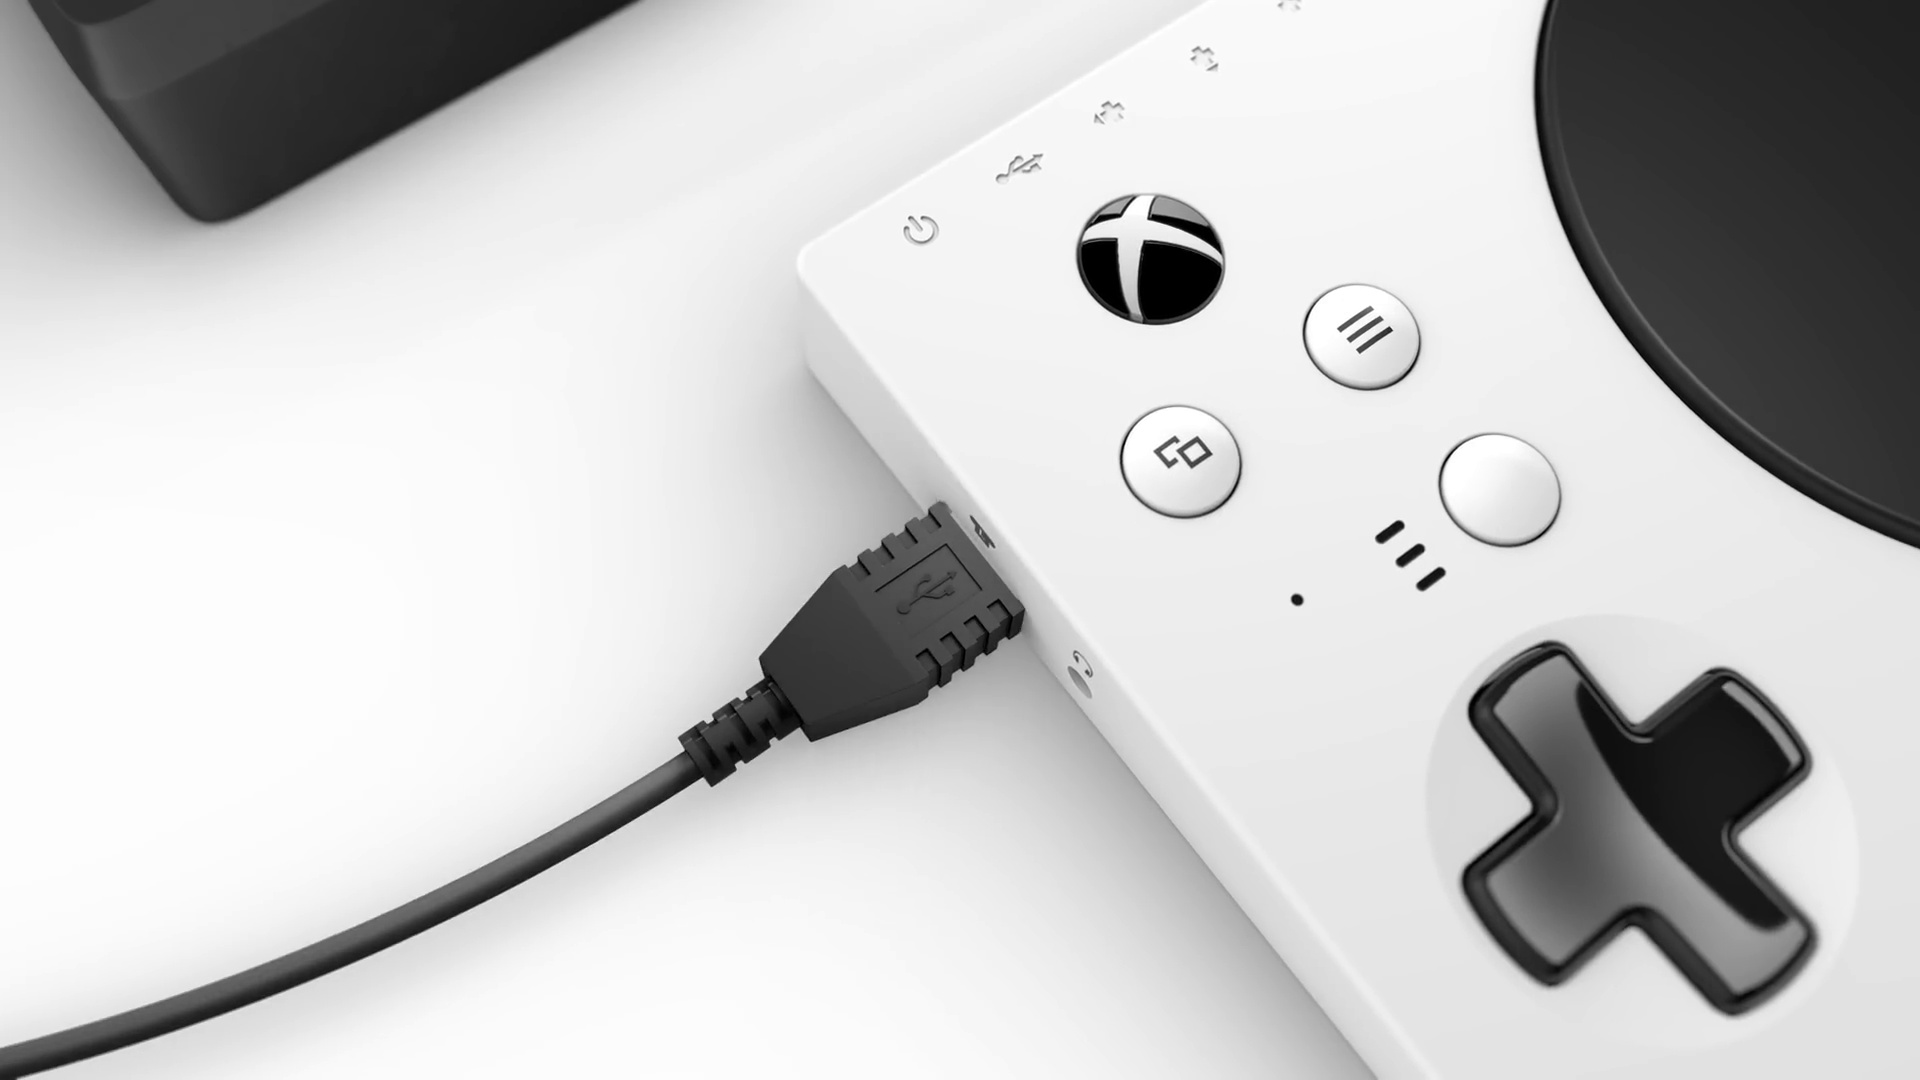 Comprometido residuo Analgésico Unboxing de Xbox Adaptive Controller, tecnología accesible hasta en el  embalaje | Computer Hoy